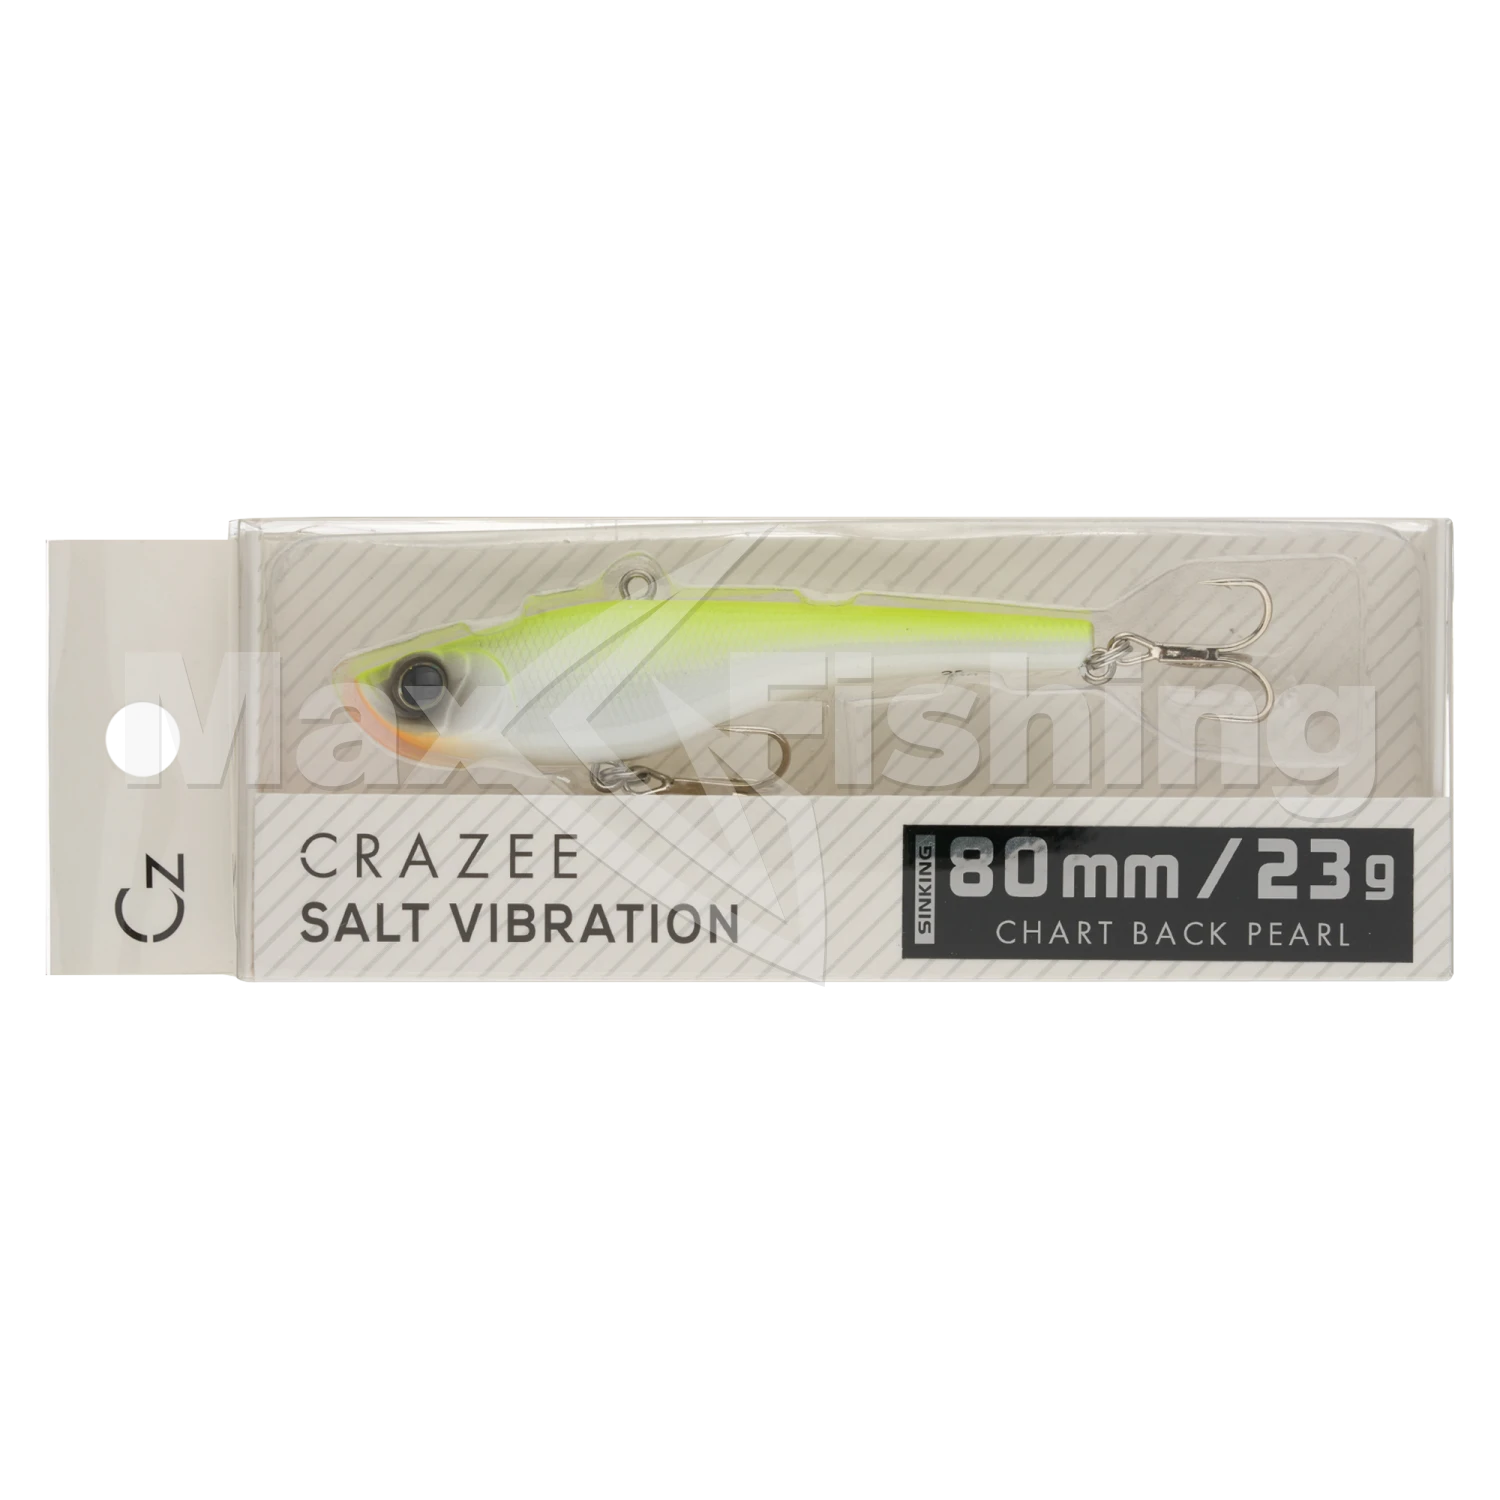 Виб Crazee Salt Vibration 80 #Chart Back Pearl